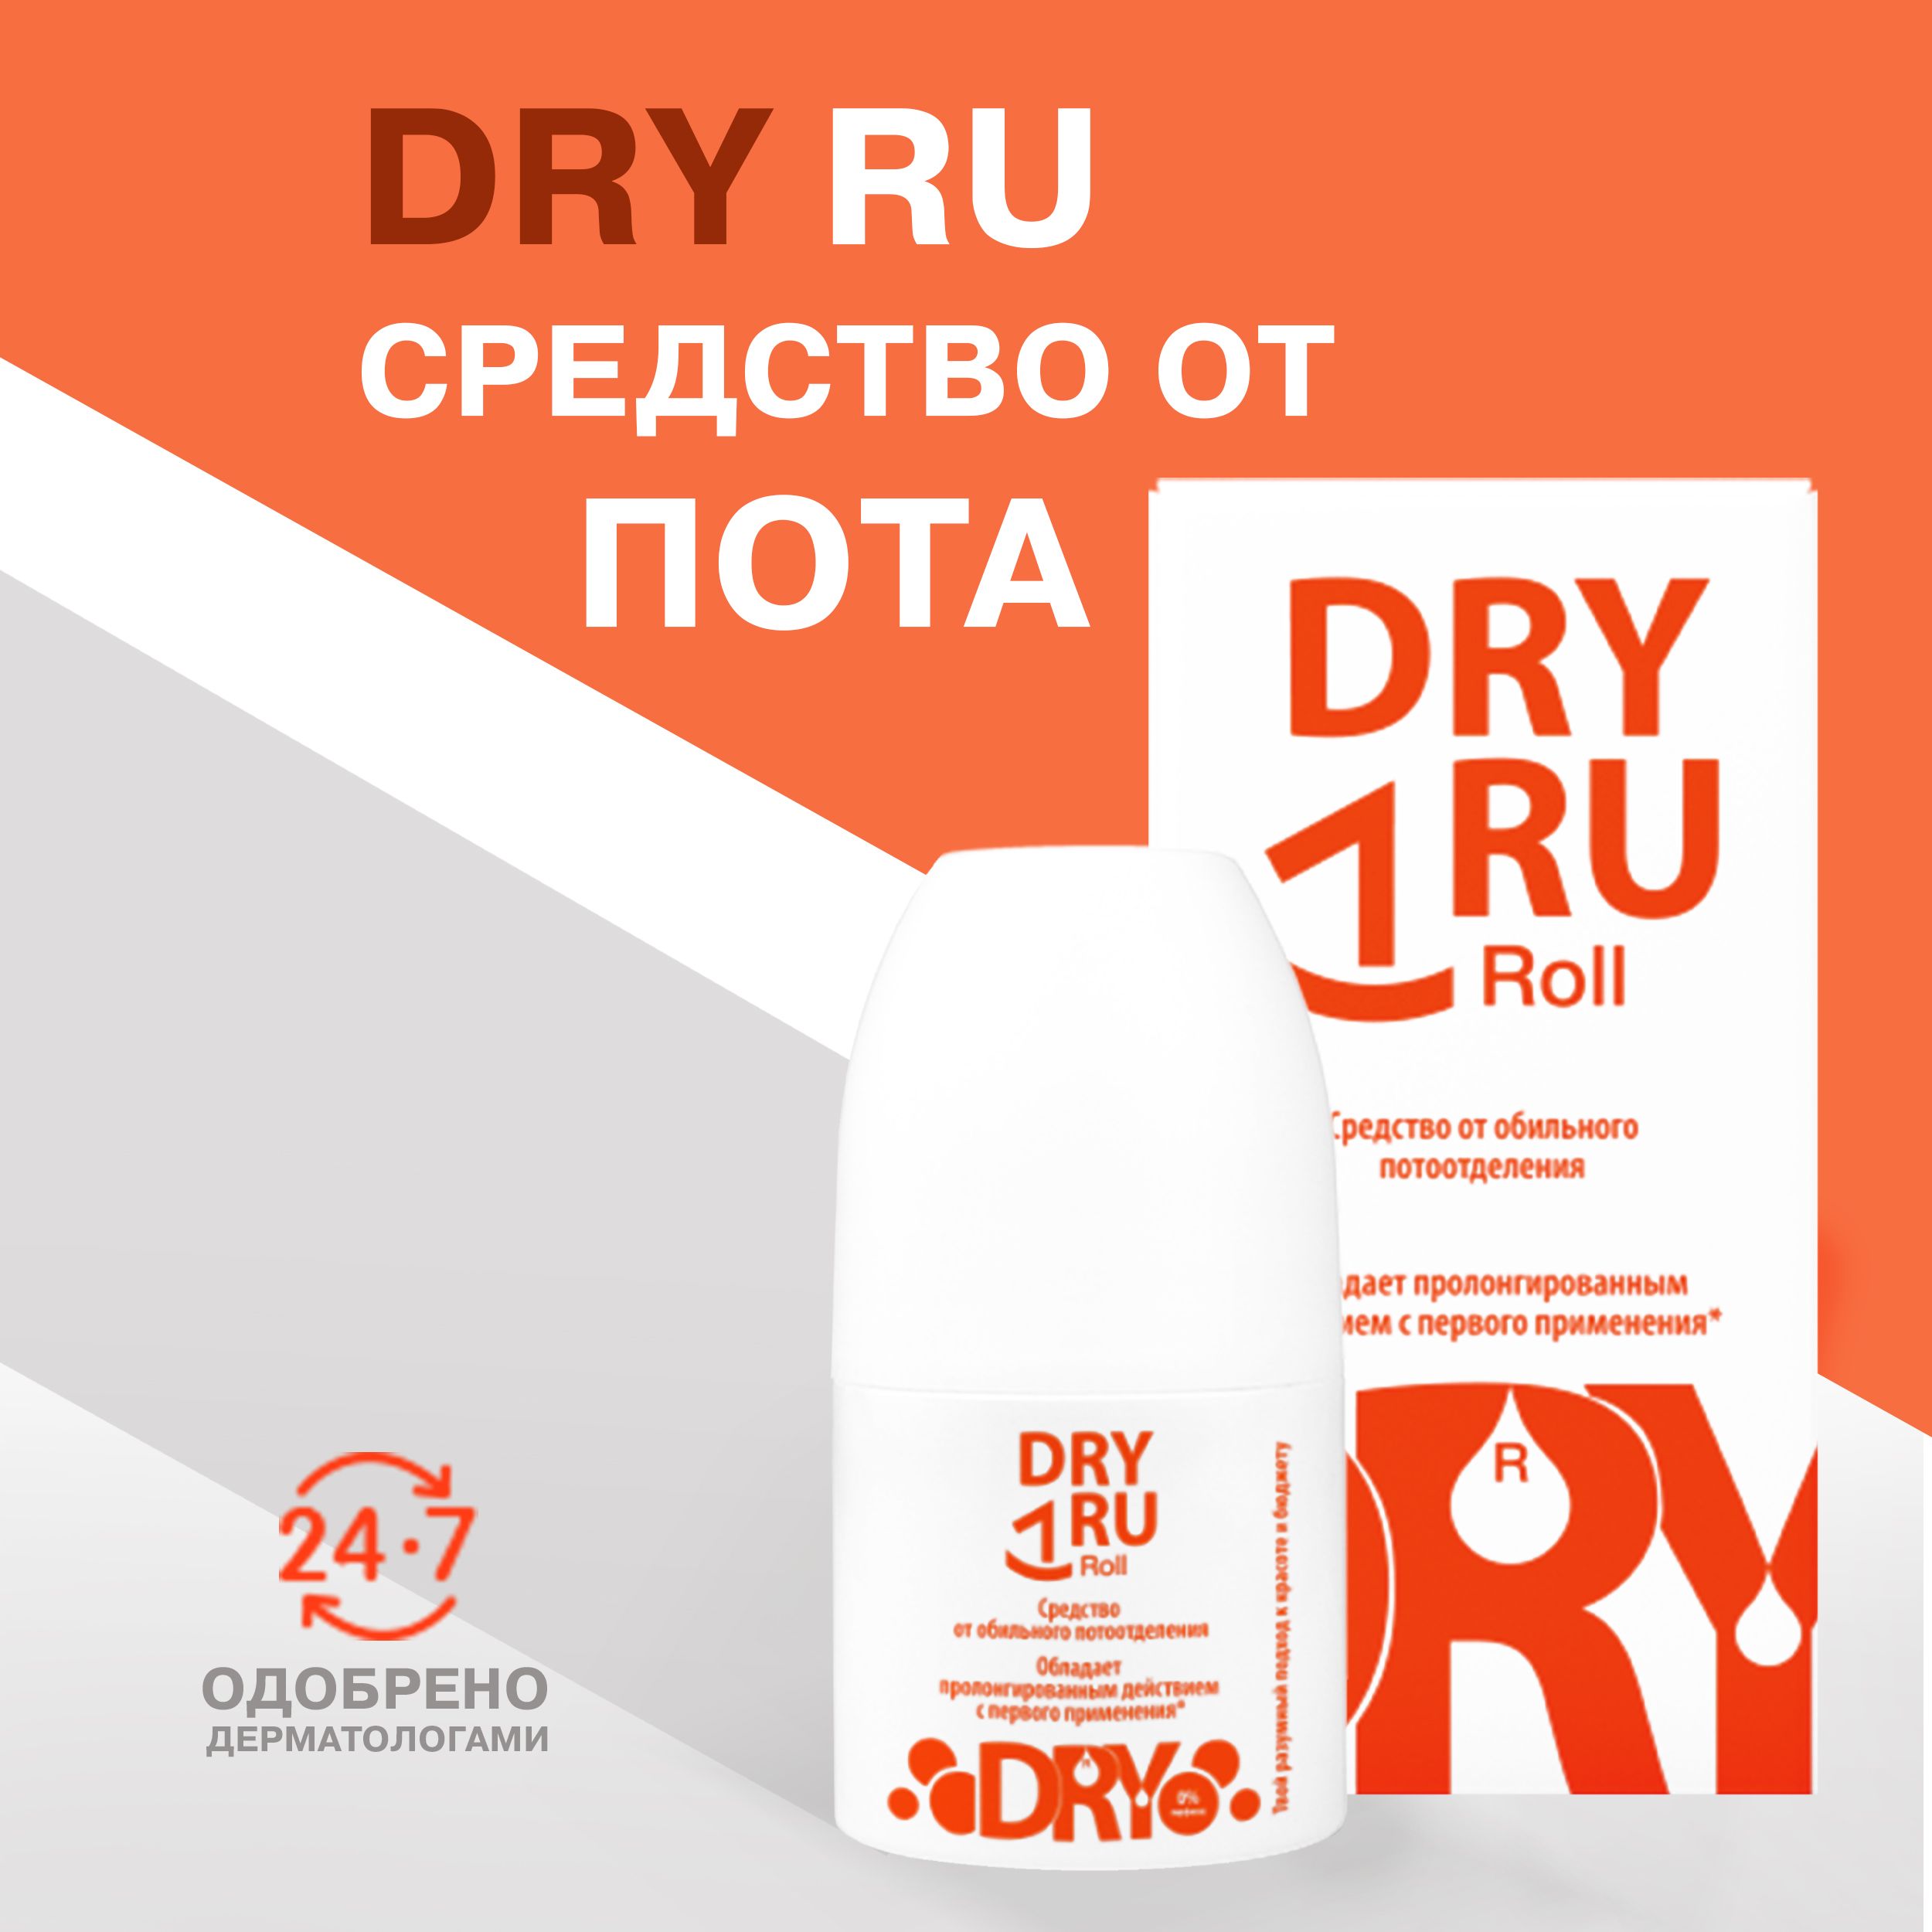 Dry ru отзывы